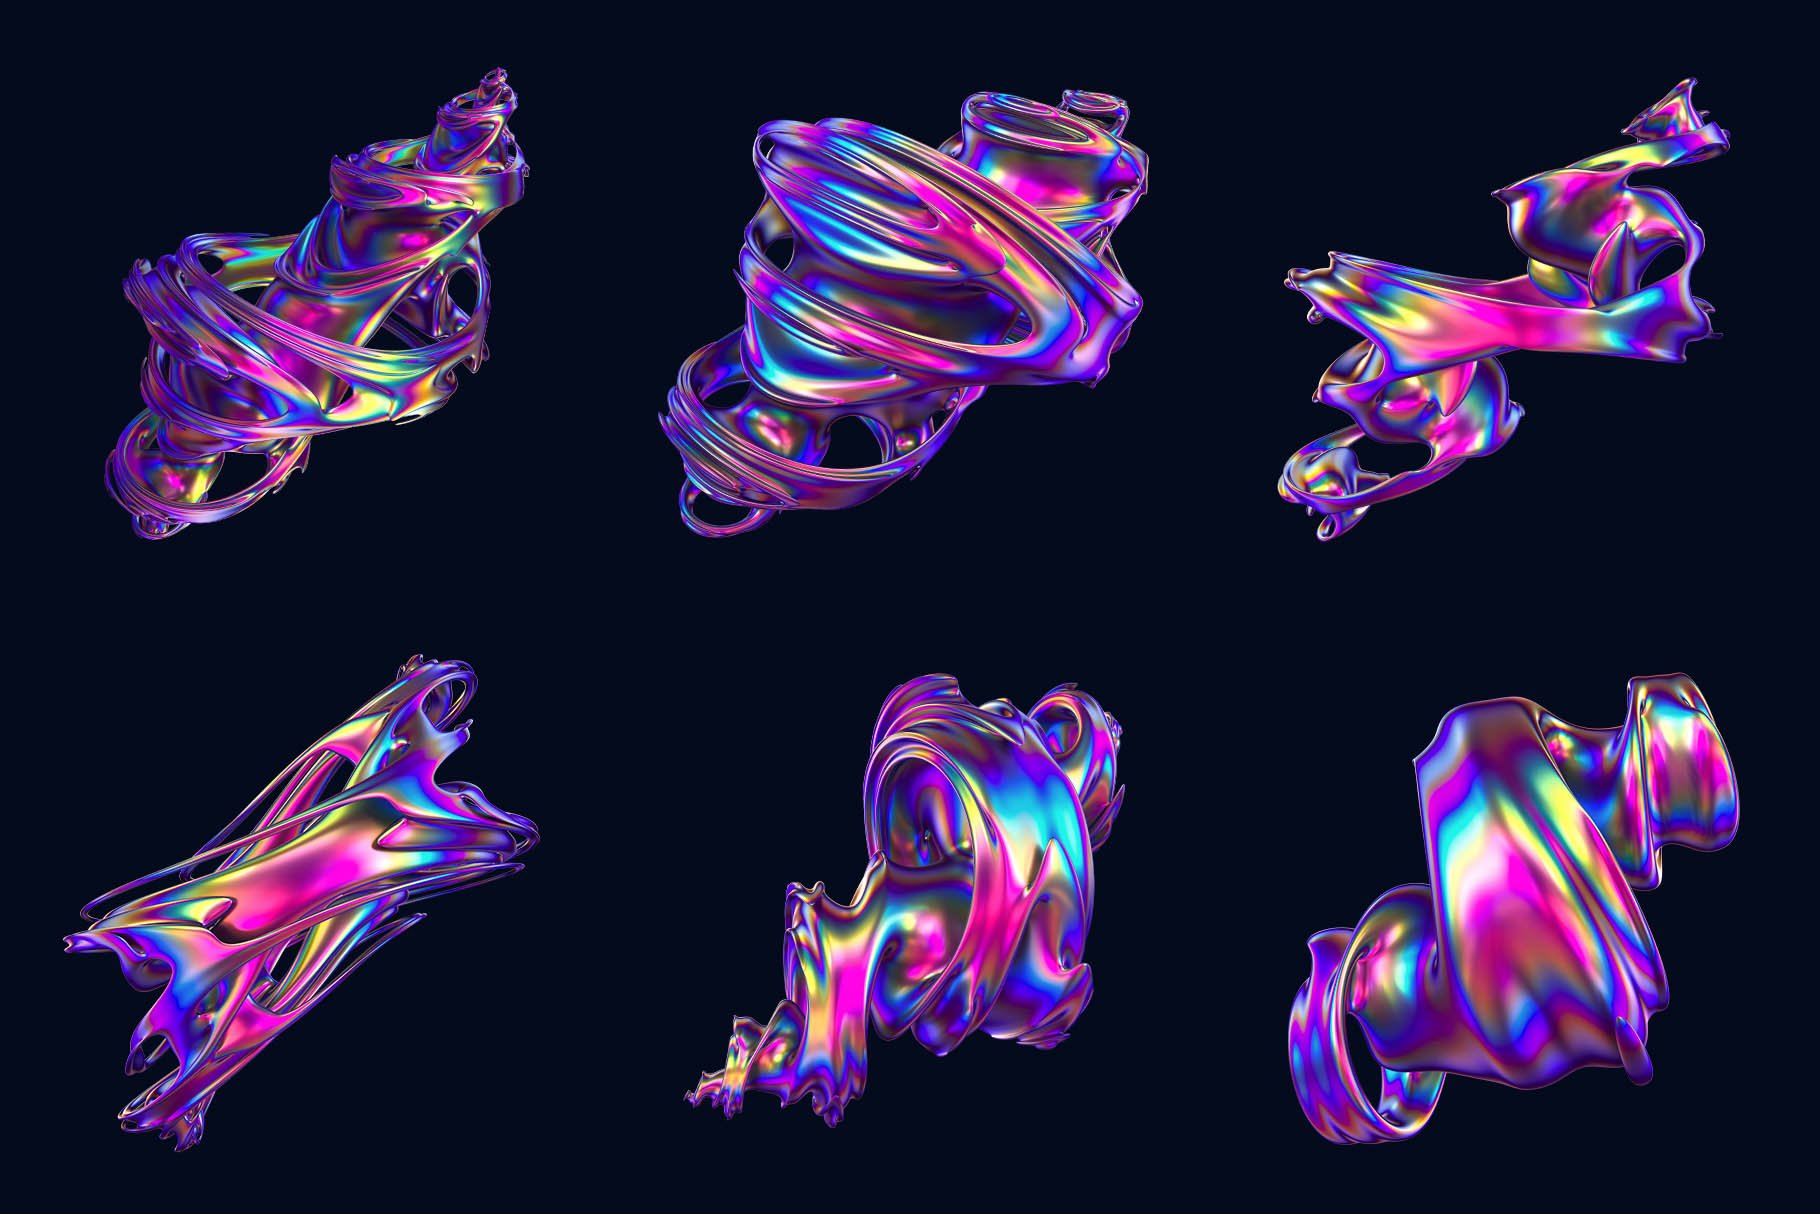 24+高级全息霓虹抽象旋风扭曲形状图案 Hyper Abstract Cyclone Shapes 图片素材 第5张